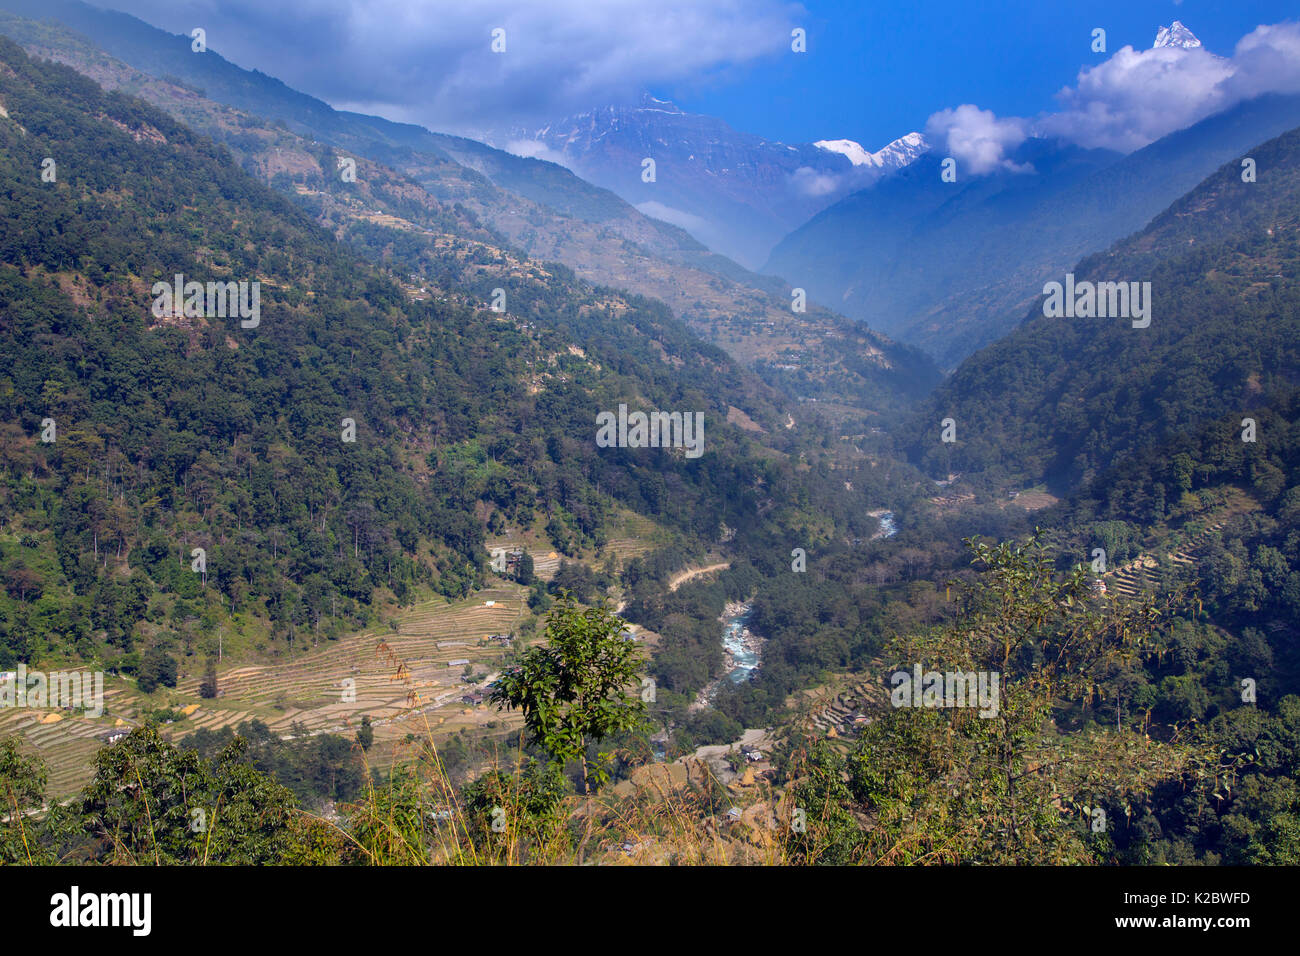 Agricoltura terrazza vicino al villaggio di montagna di Ghandruk, Modi Khola Valley, Himalaya, Nepal. Novembre 2014. Foto Stock